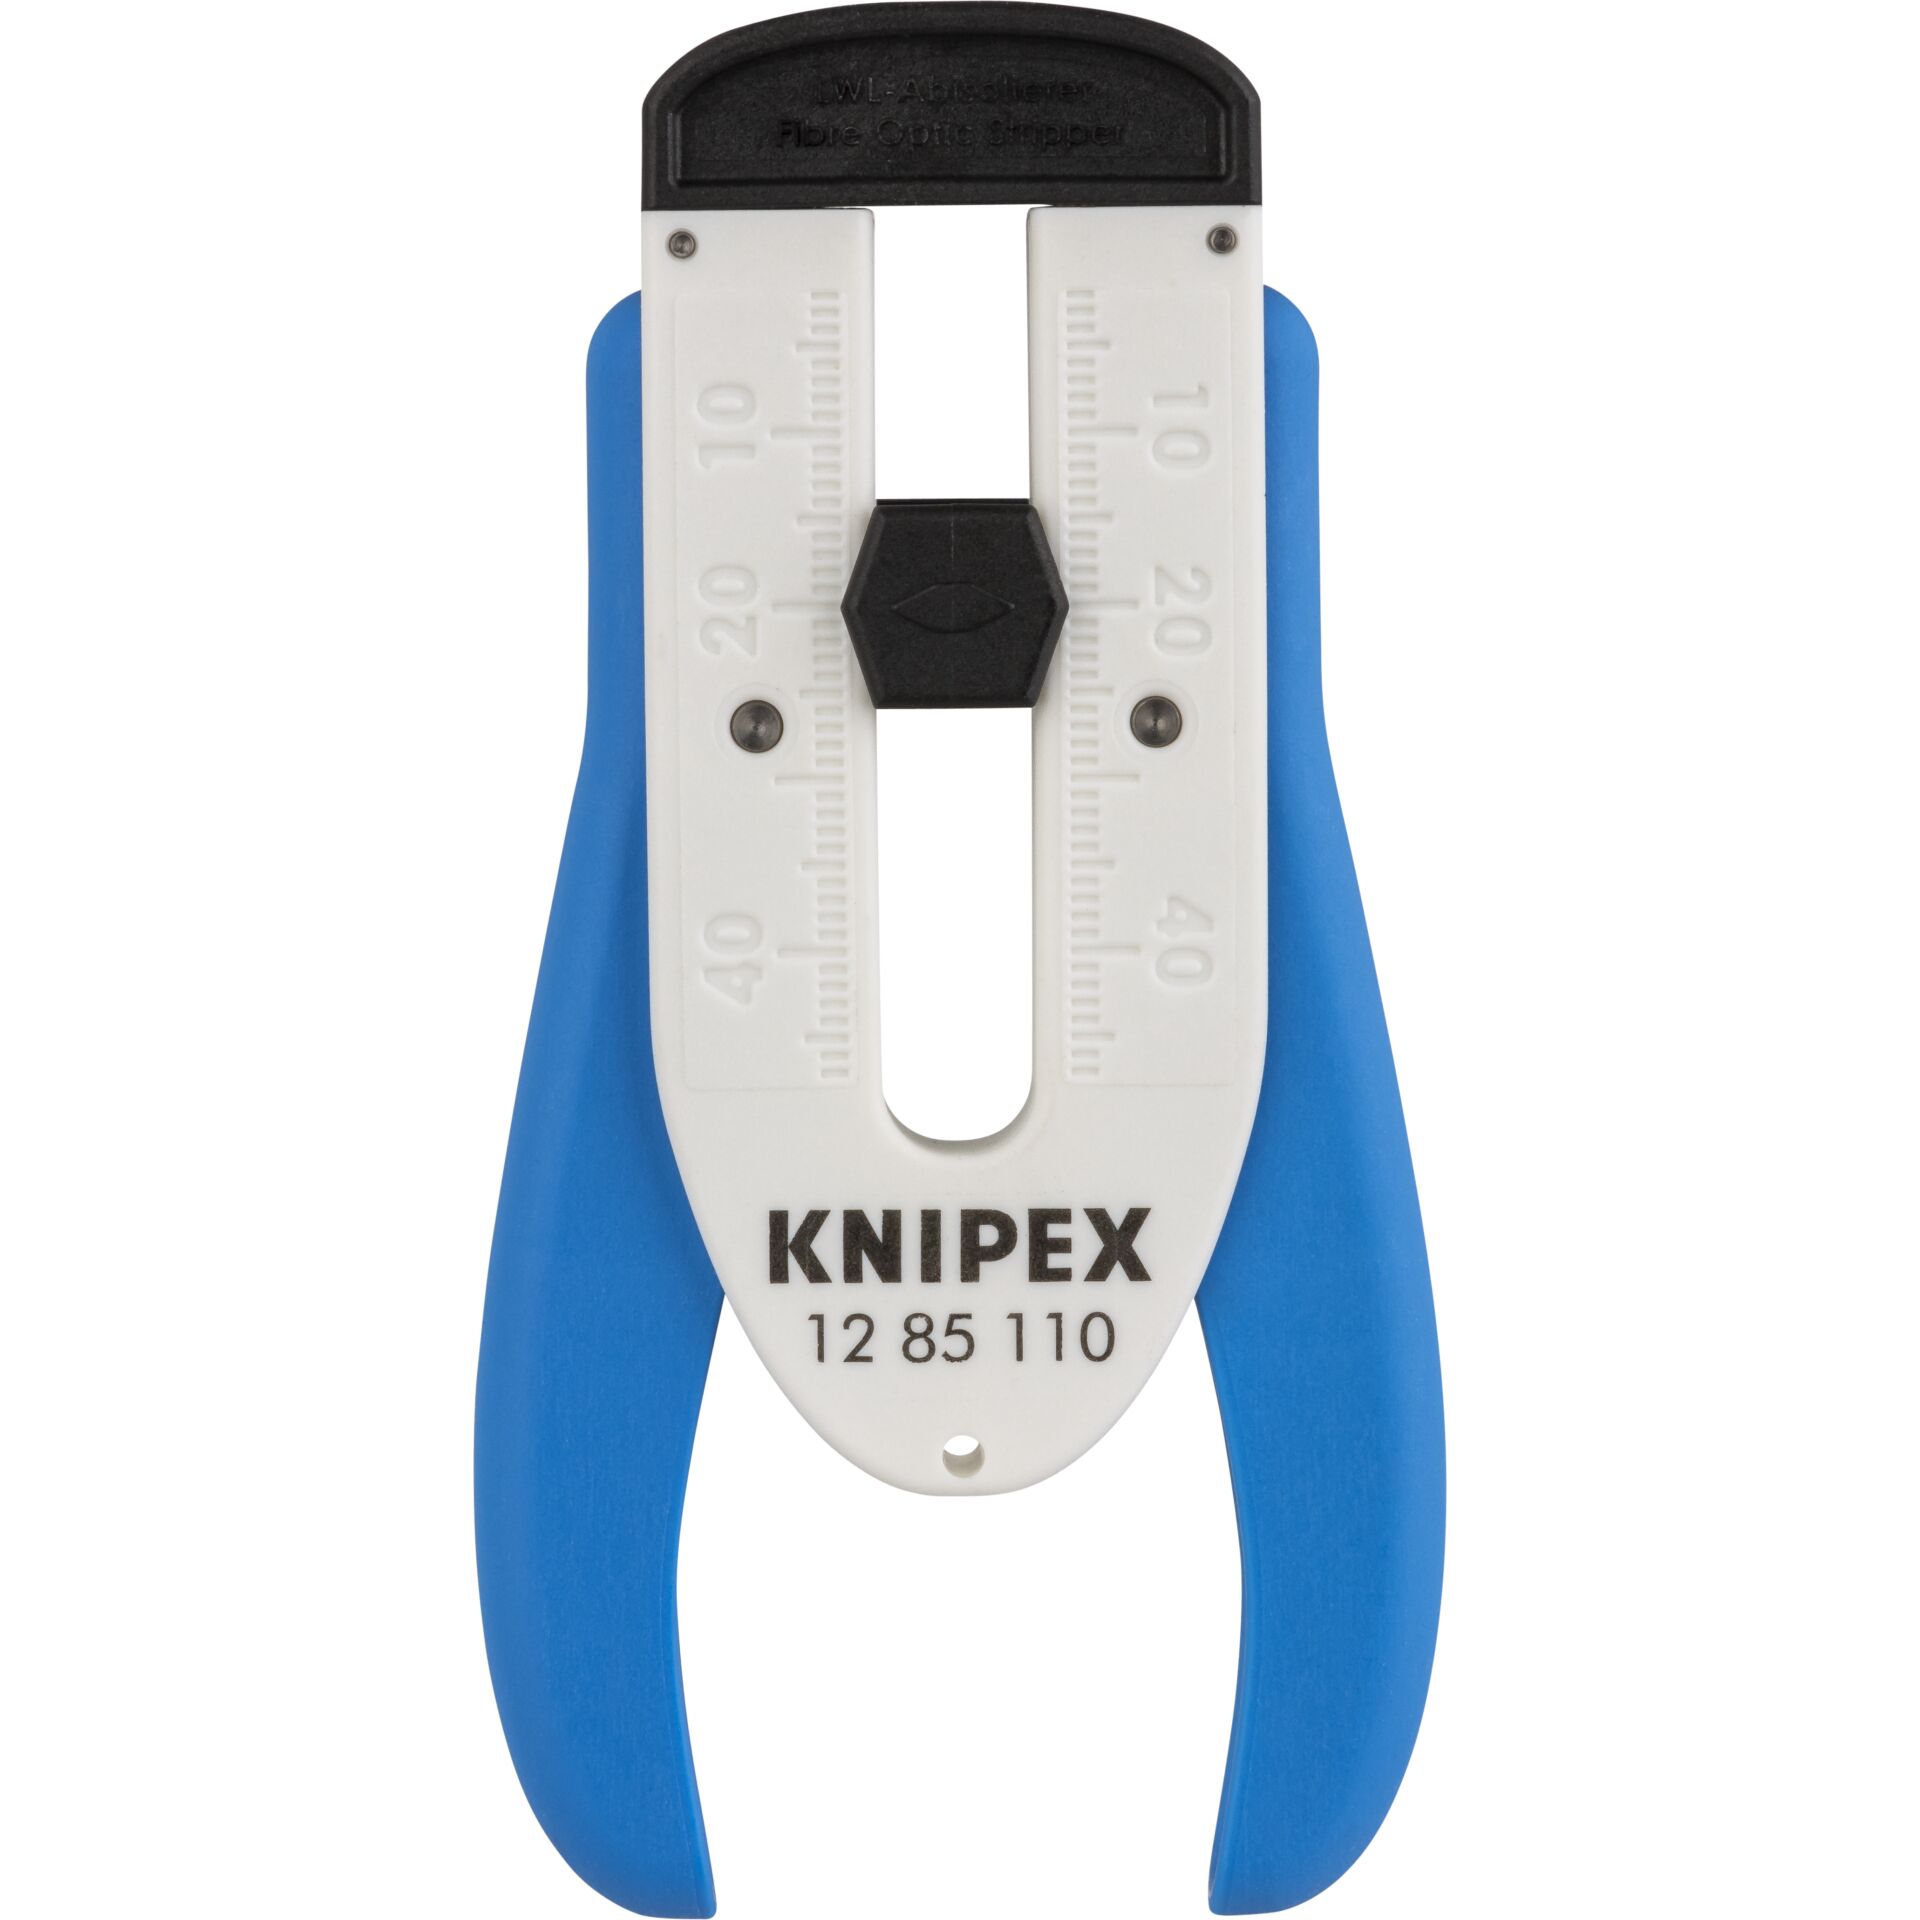 Knipex 12 85 110 SB Abisolierzange